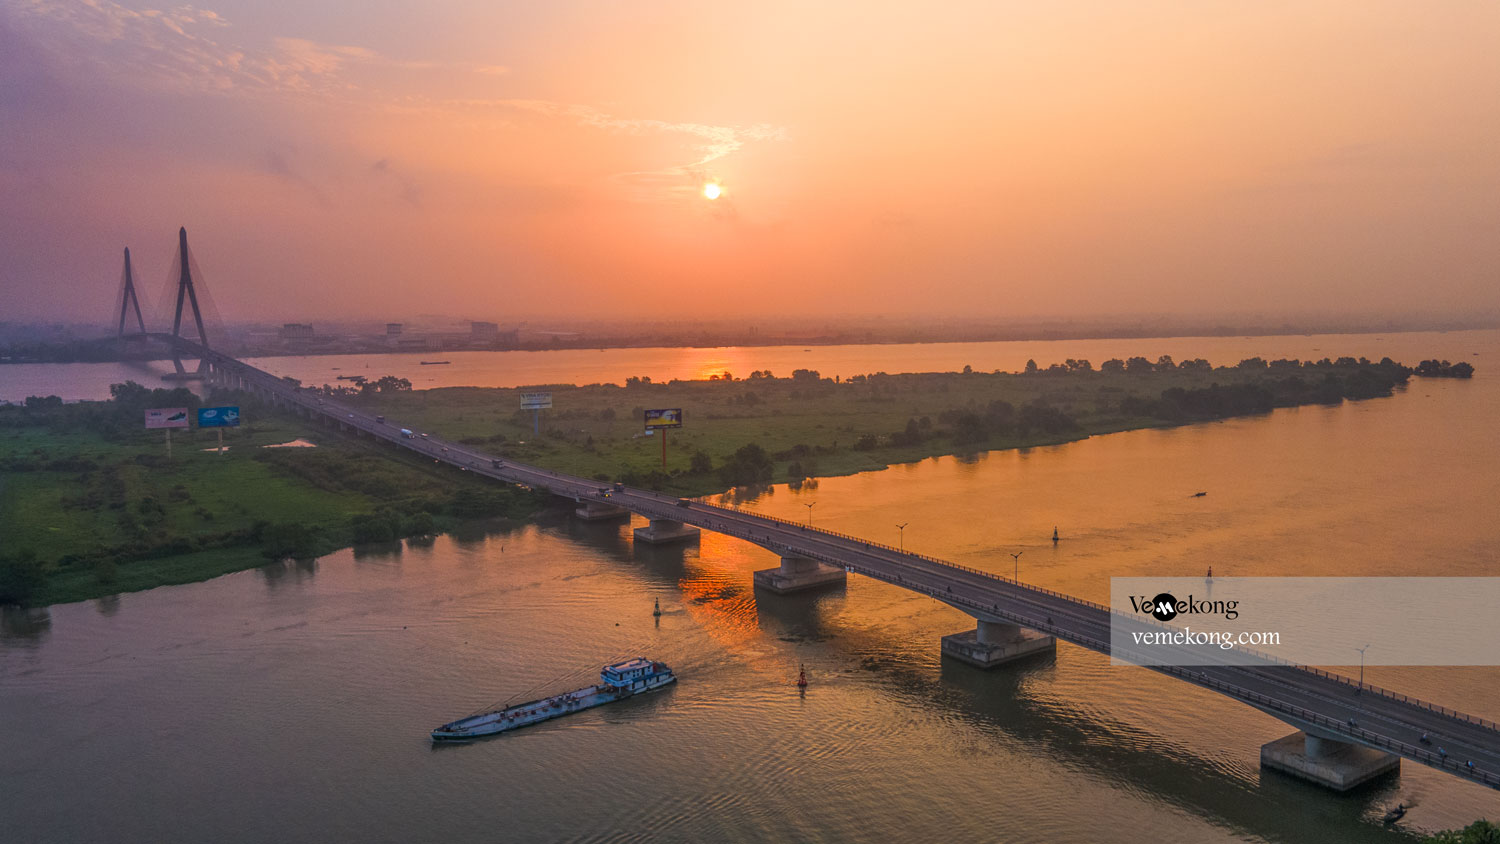 Cầu Cần Thơ là niềm tự hào của Việt Nam với kiến trúc độc đáo và vị trí đẹp mắt. Những bức ảnh về cây cầu này đều khiến con tim người xem rung động trước sự tinh tế và đẹp đến nghẹt thở.